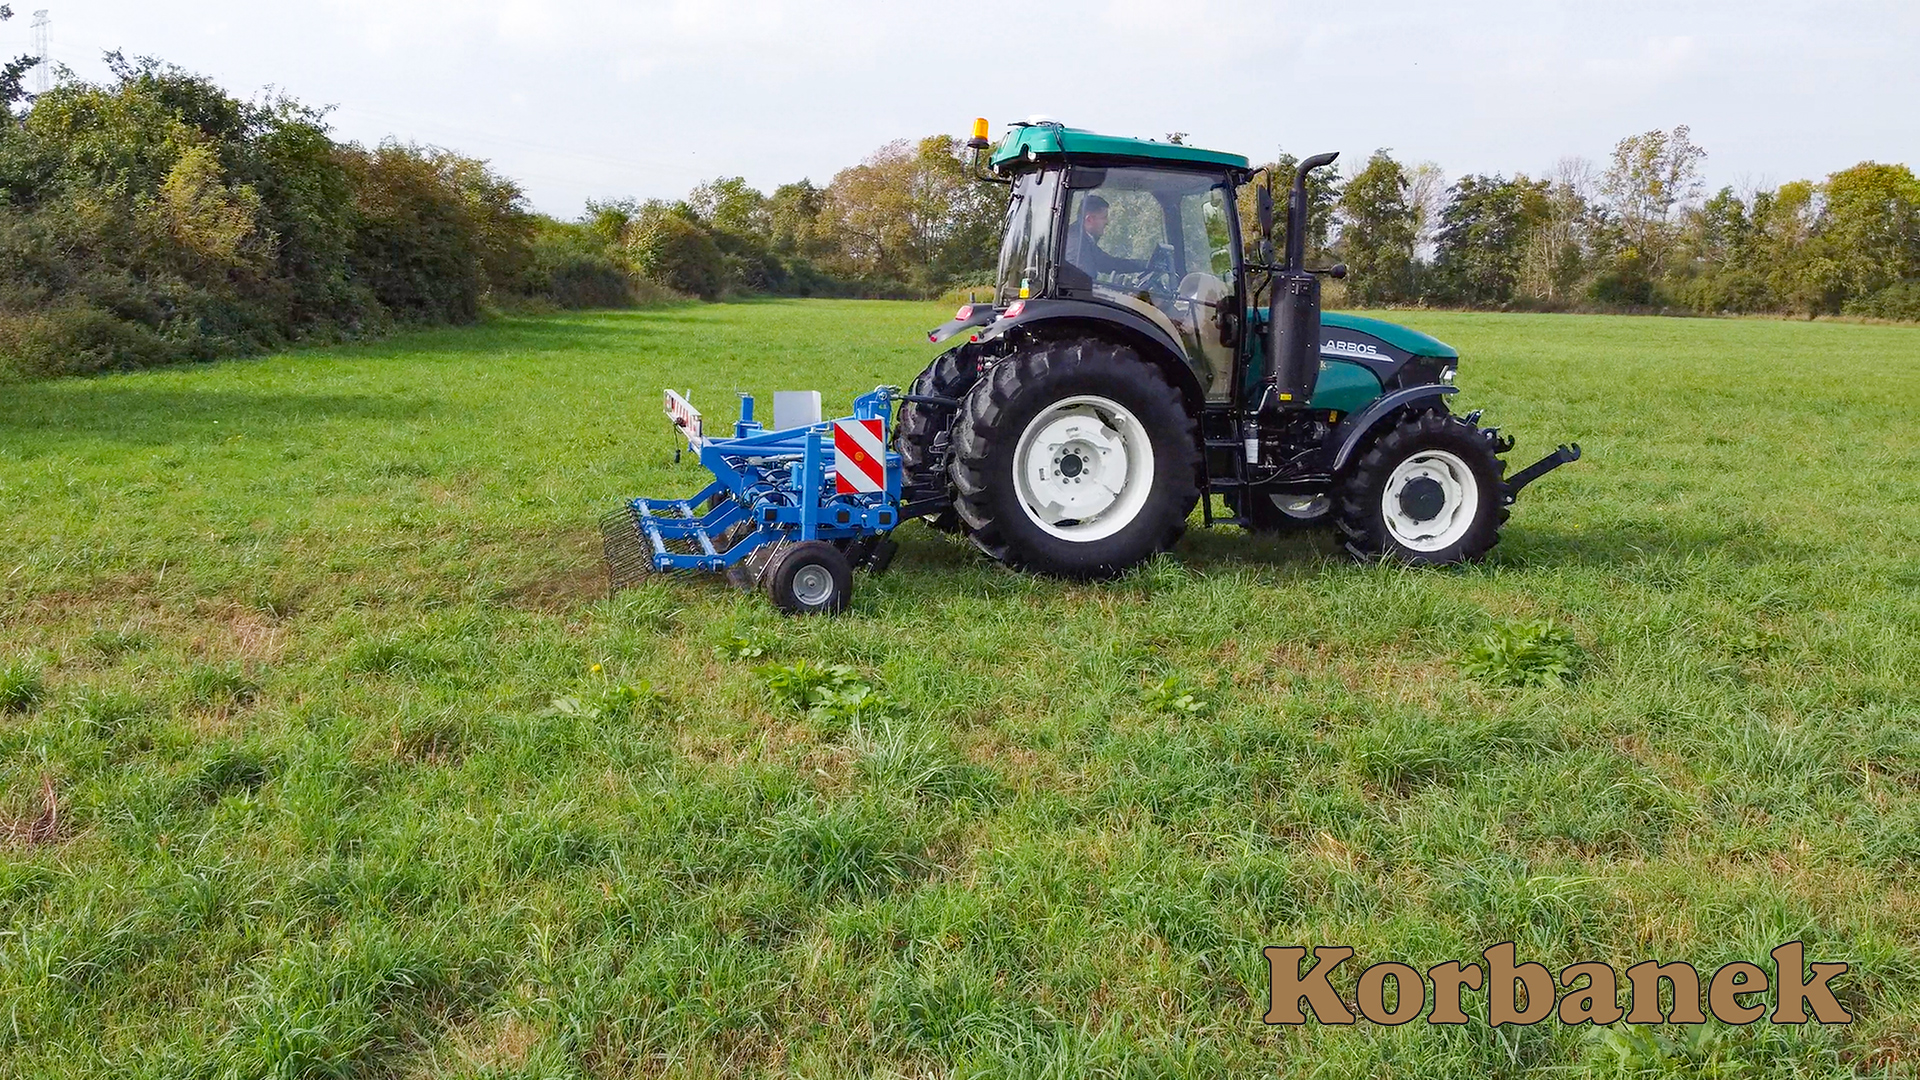 Produkty Carre testowane na łąkach i polach przez firmę Korbanek